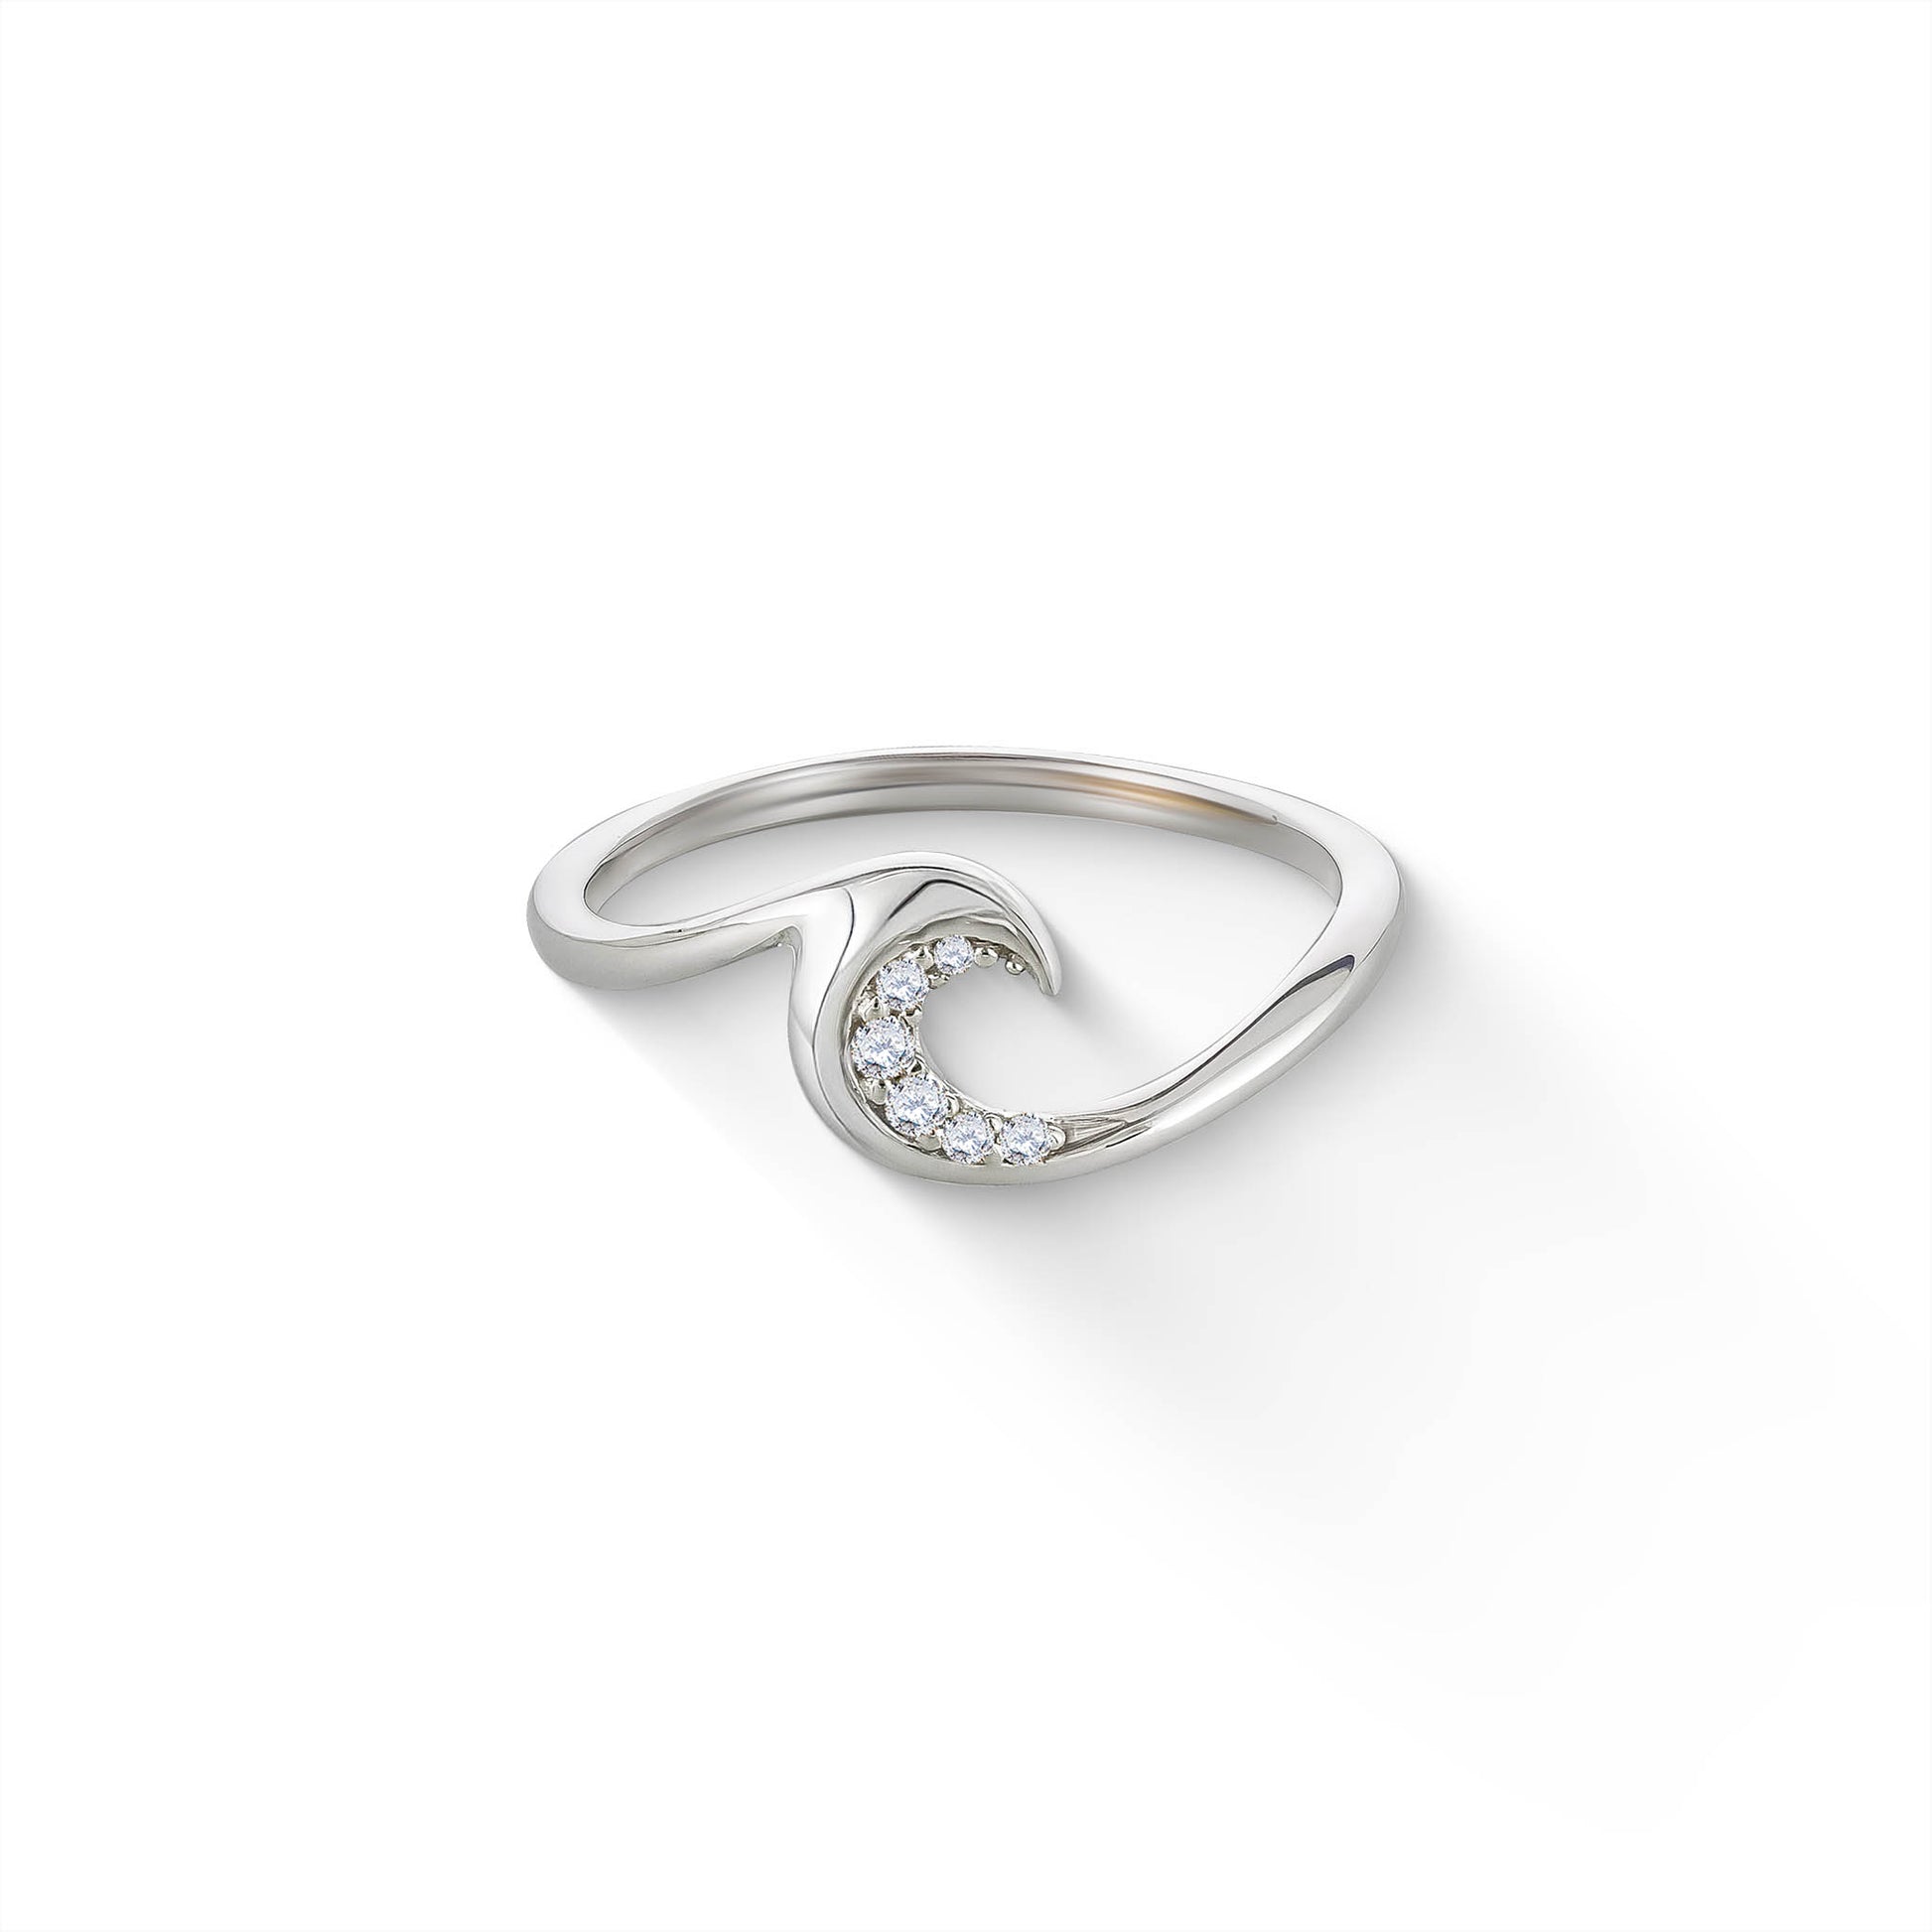 44632 - 14K White Gold - Ocean Swell Ring